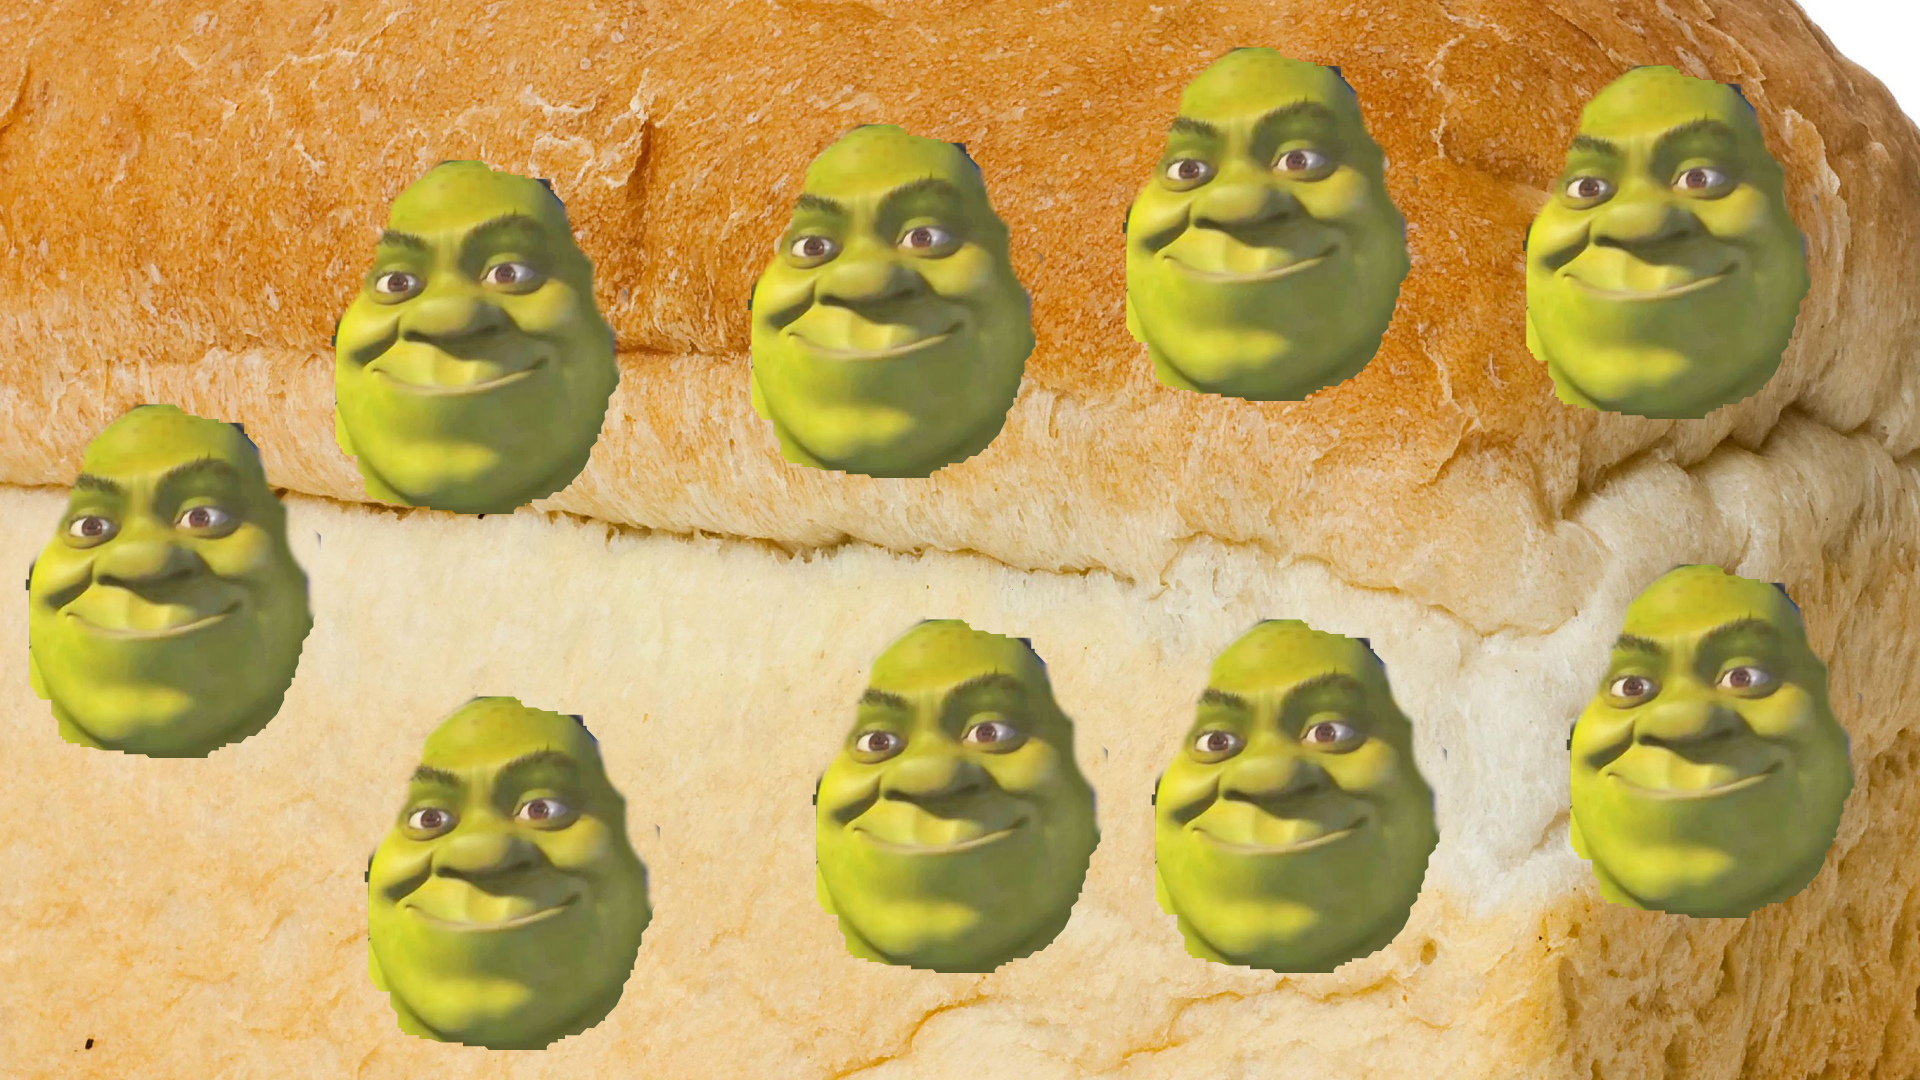 Shrek Memes Wallpapers - Wallpaper Cave